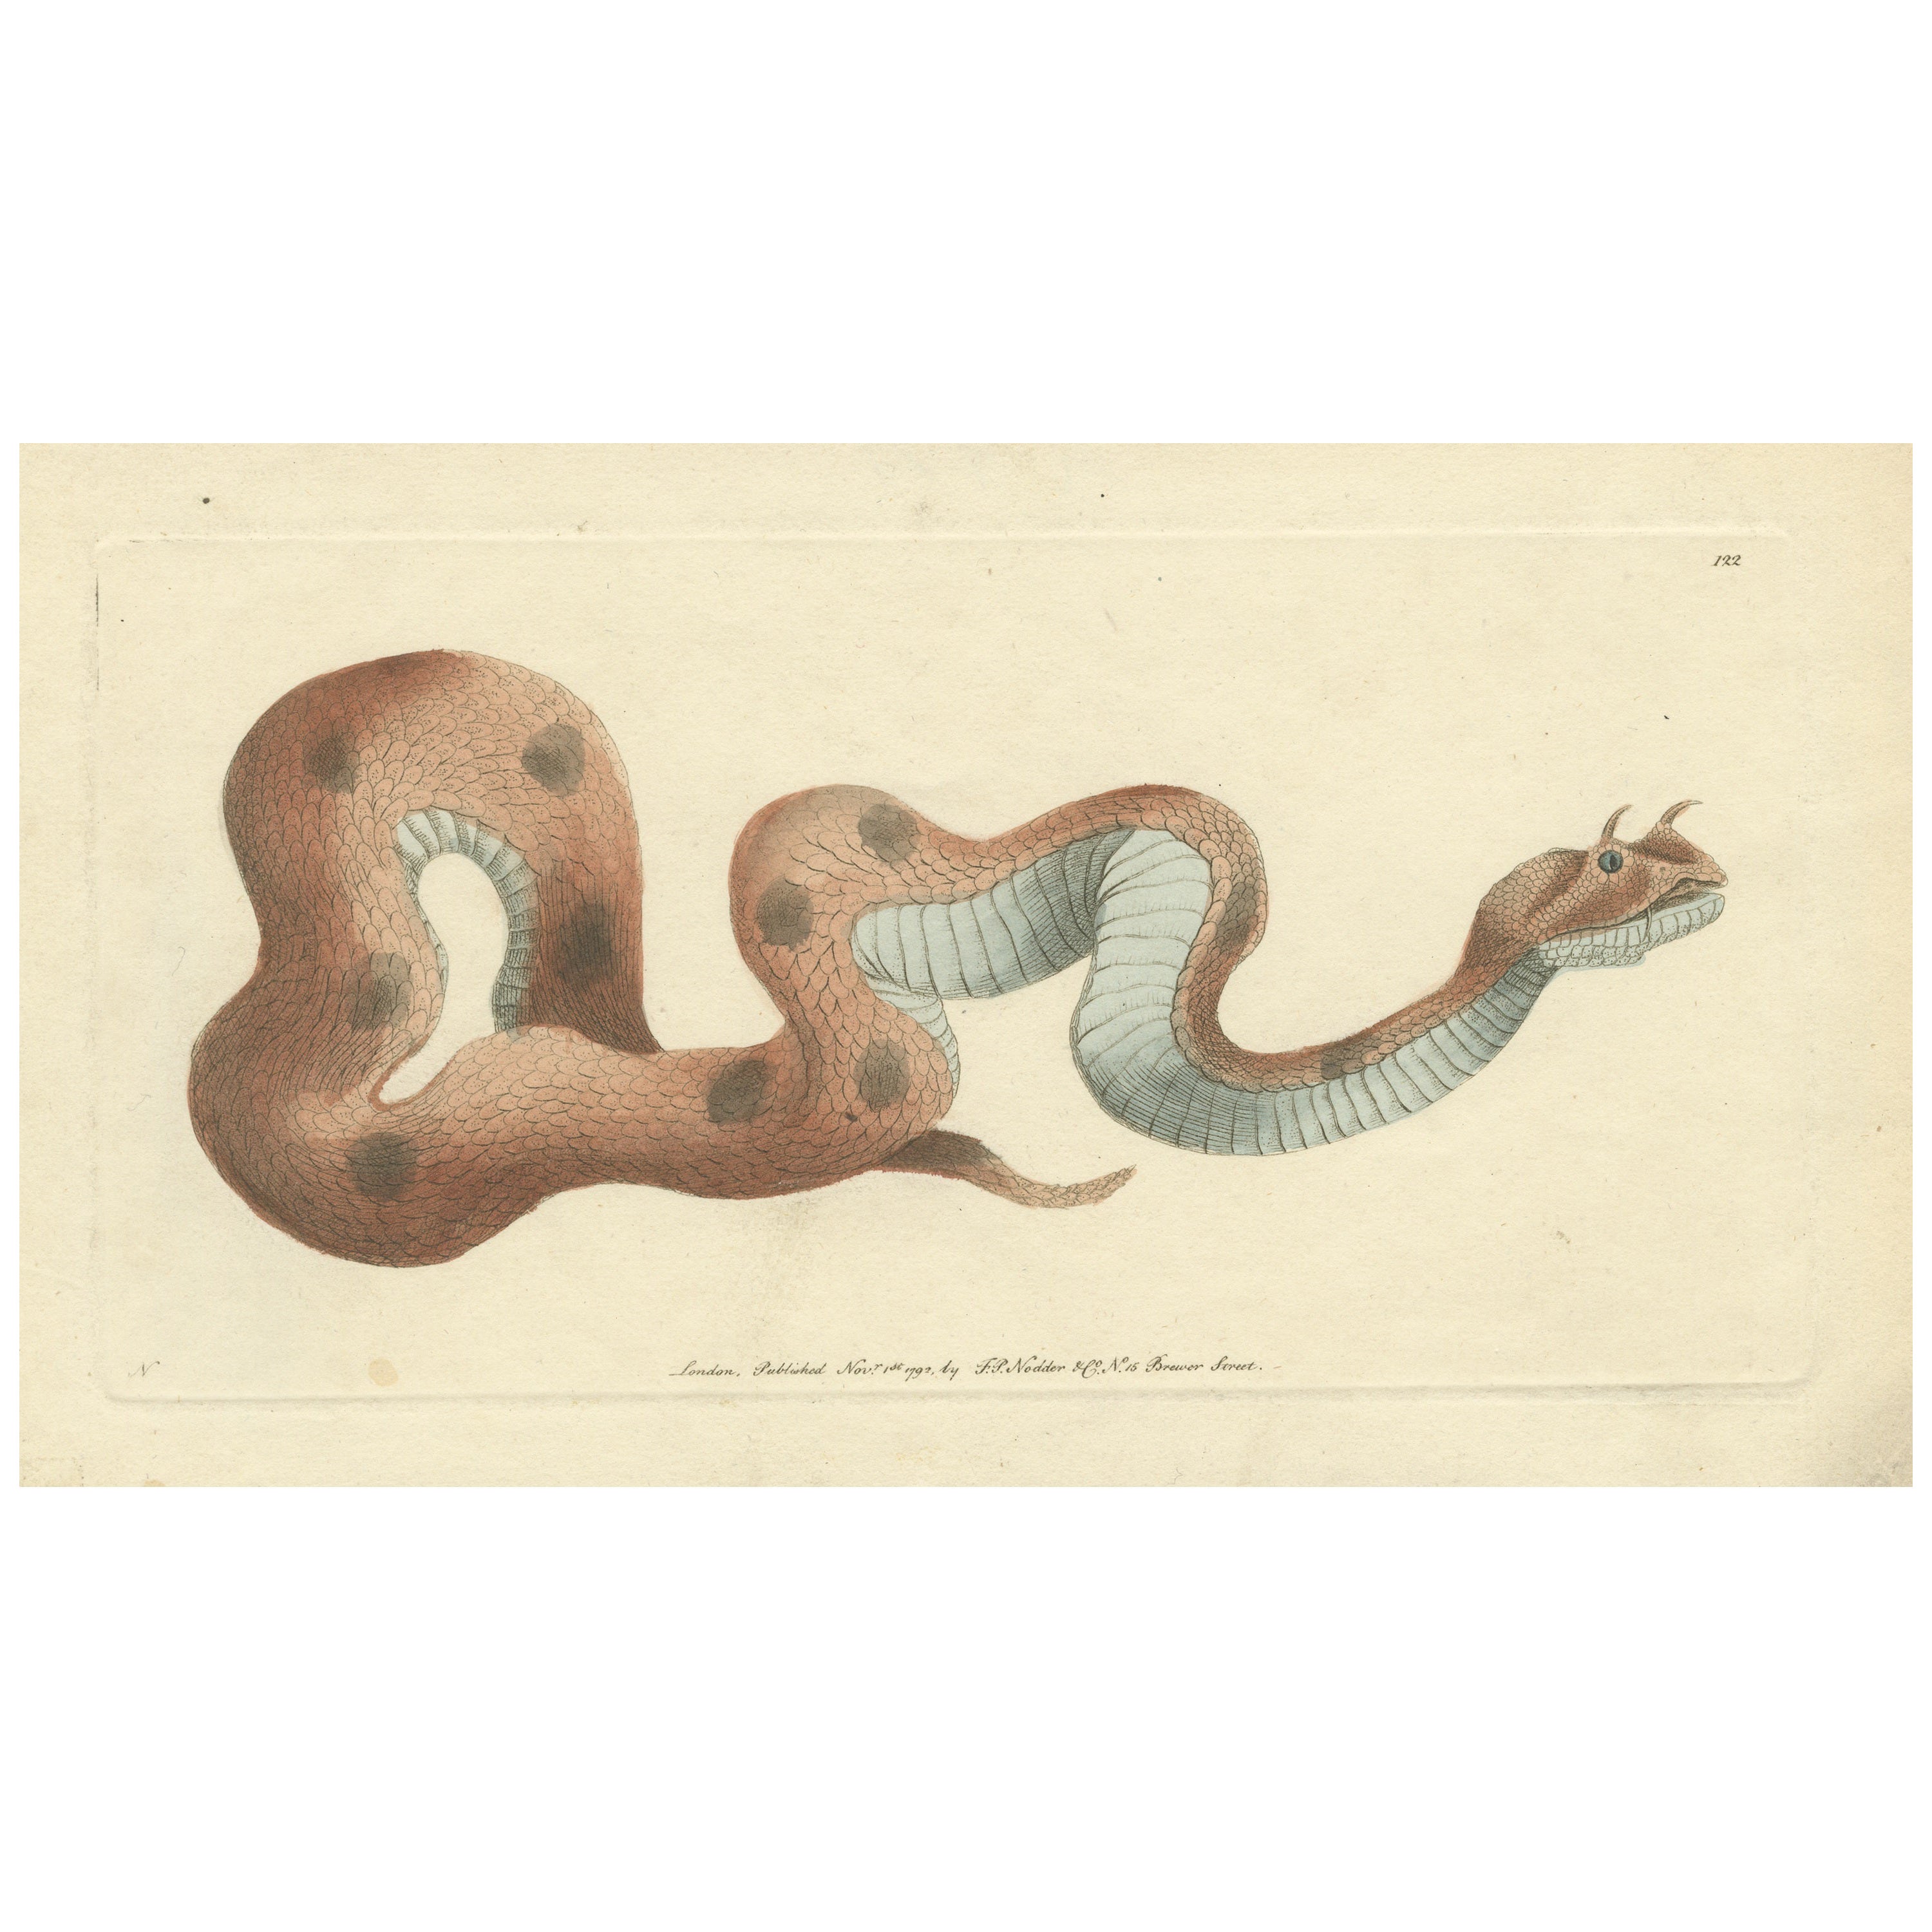 Antique Print of a Saharan or Desert Horned Viper, Cerastes Cerastes For Sale